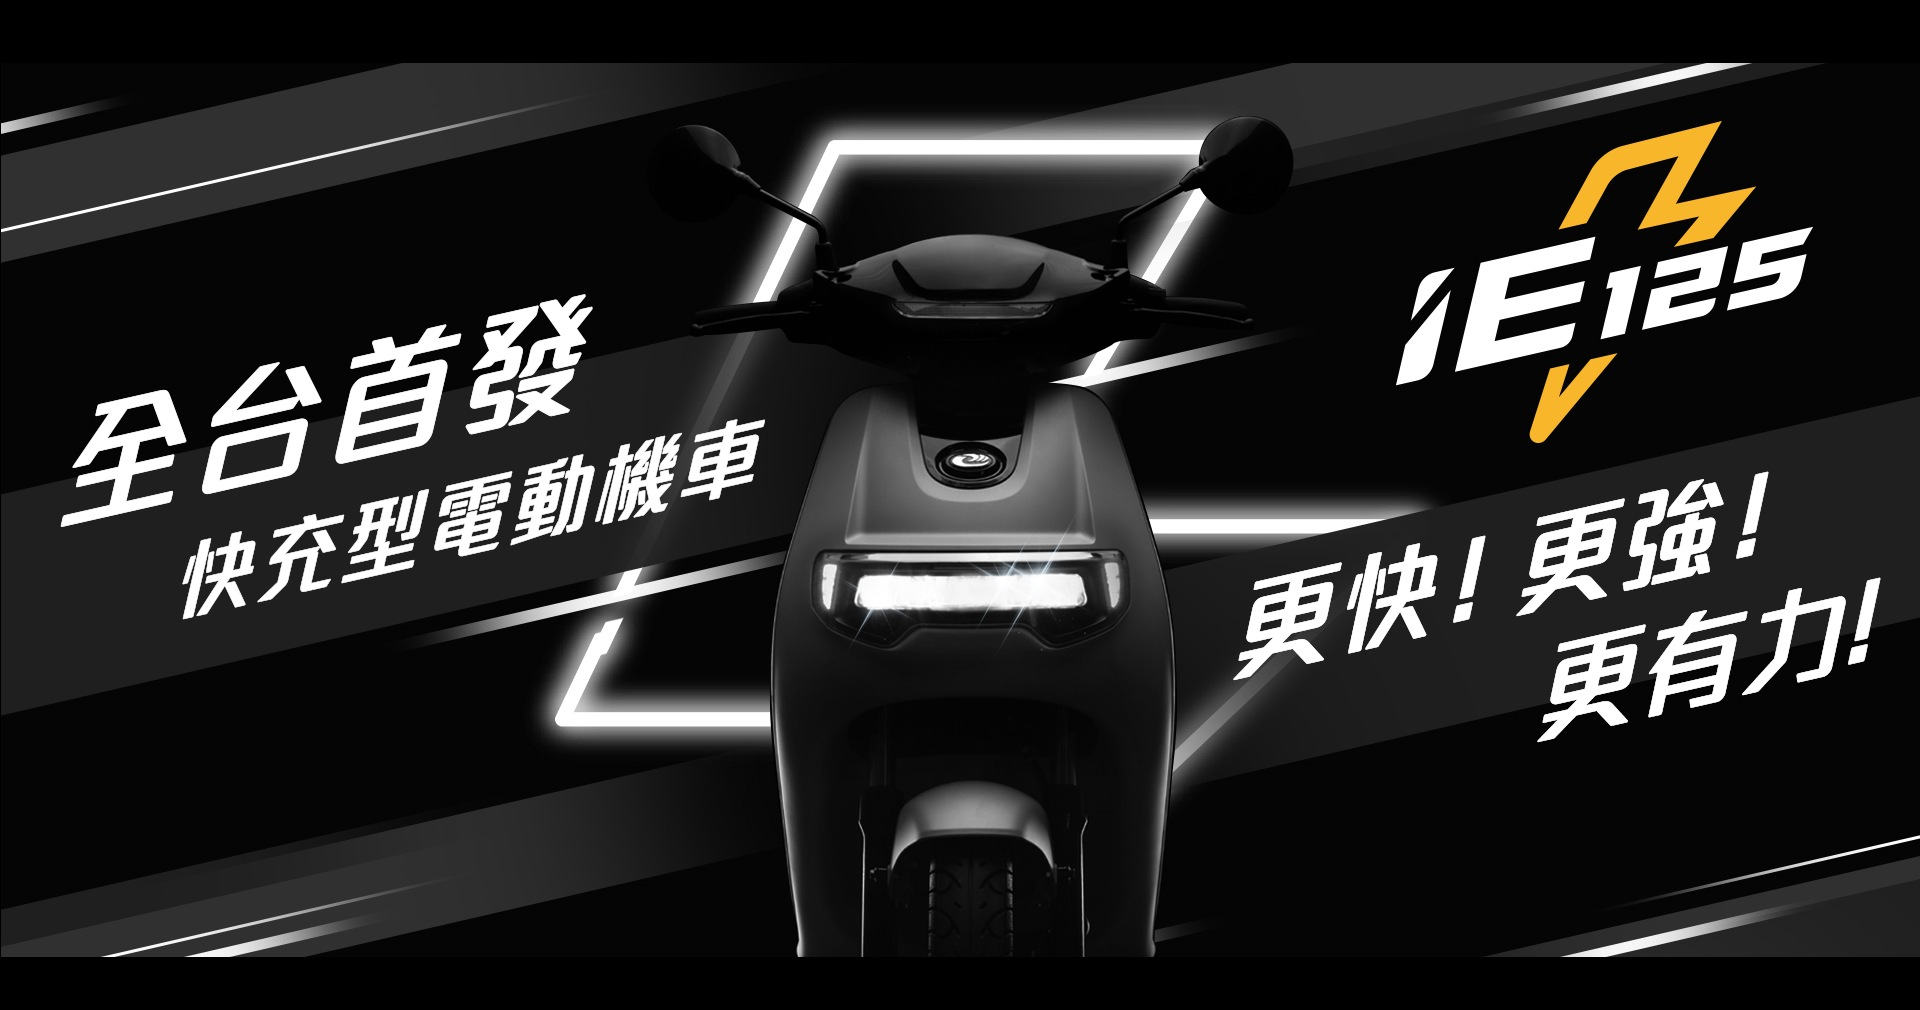 中華白牌電動車廣告曝光，車款名稱確定為「IE 125」並採快充設計